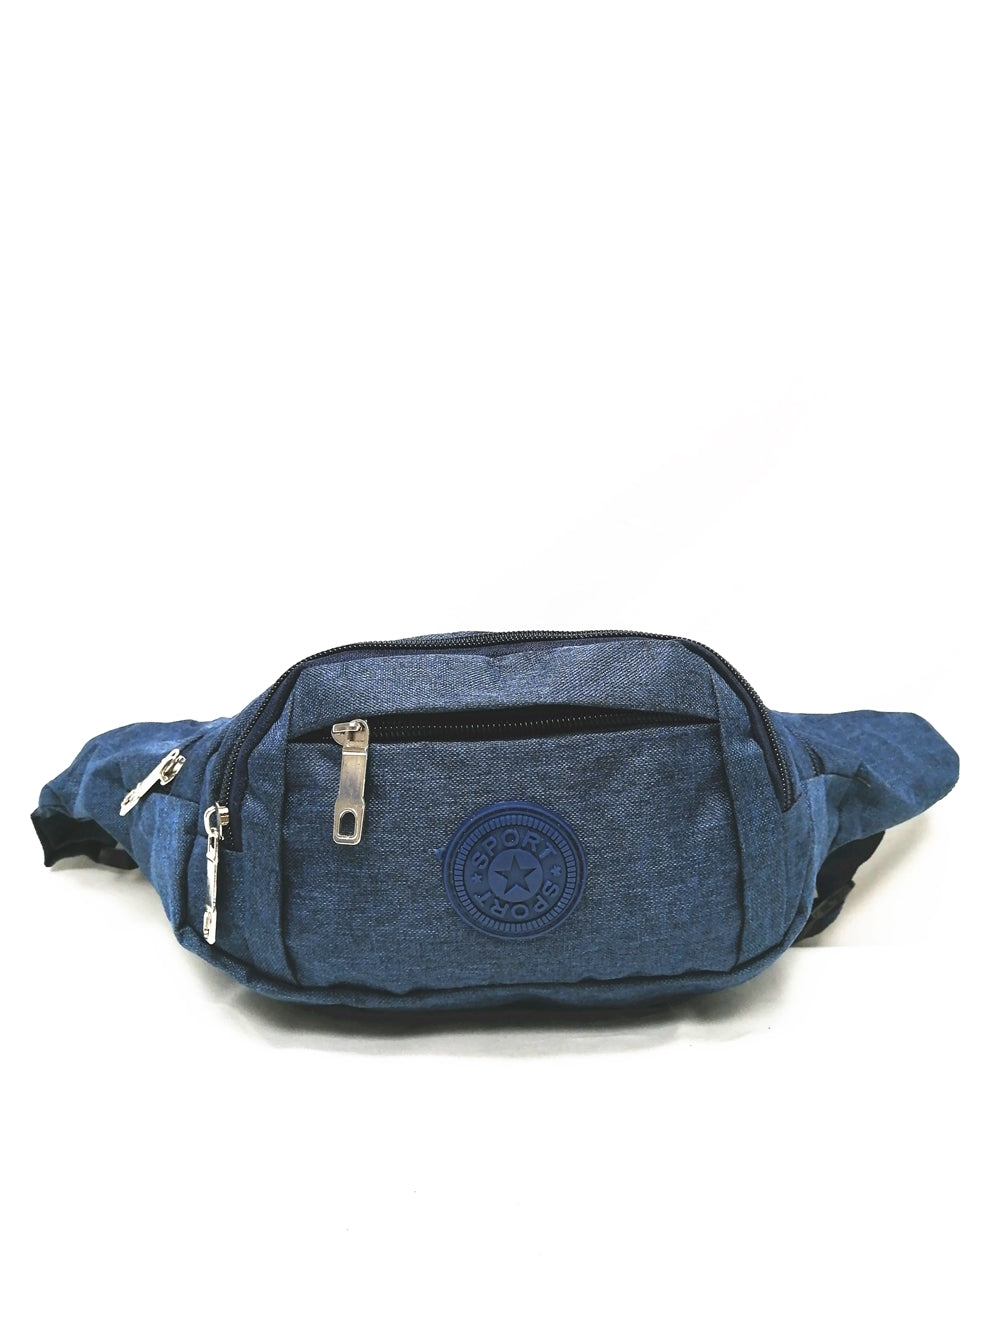 0823  waist bag blue